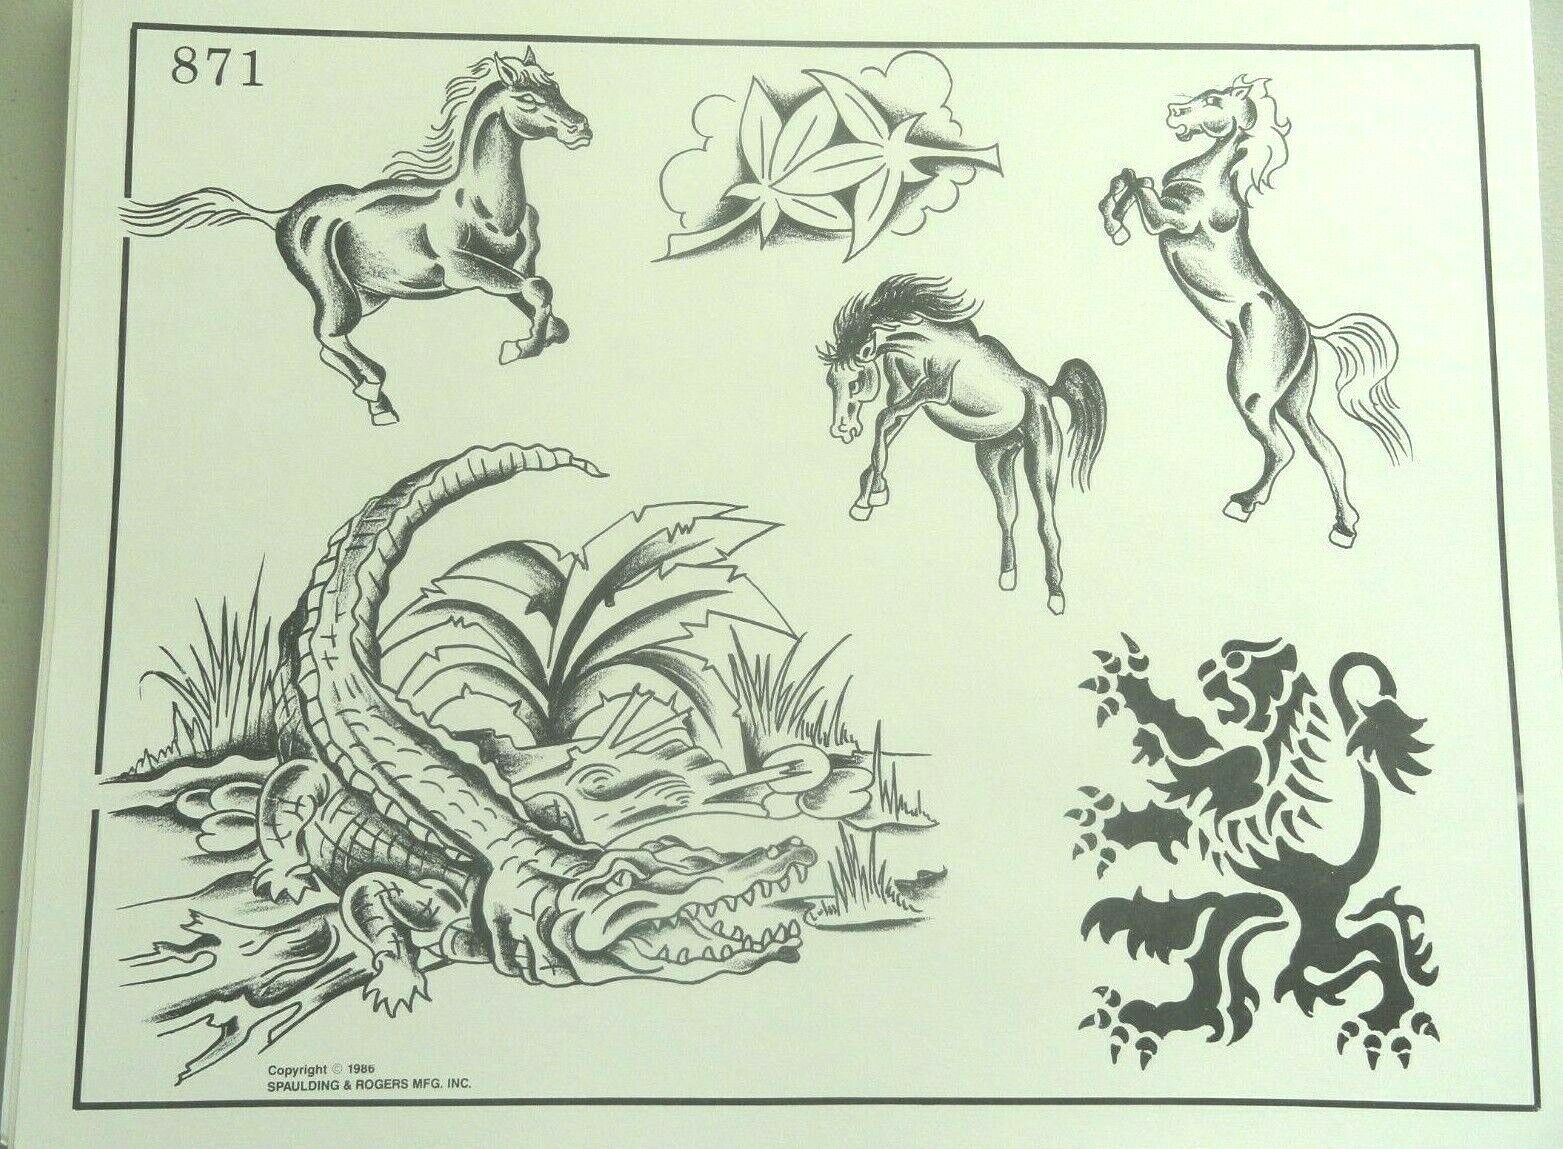 Vintage 1986 Spaulding & Rogers Tattoo Flash Sheet 871 Alligator Horse Lion